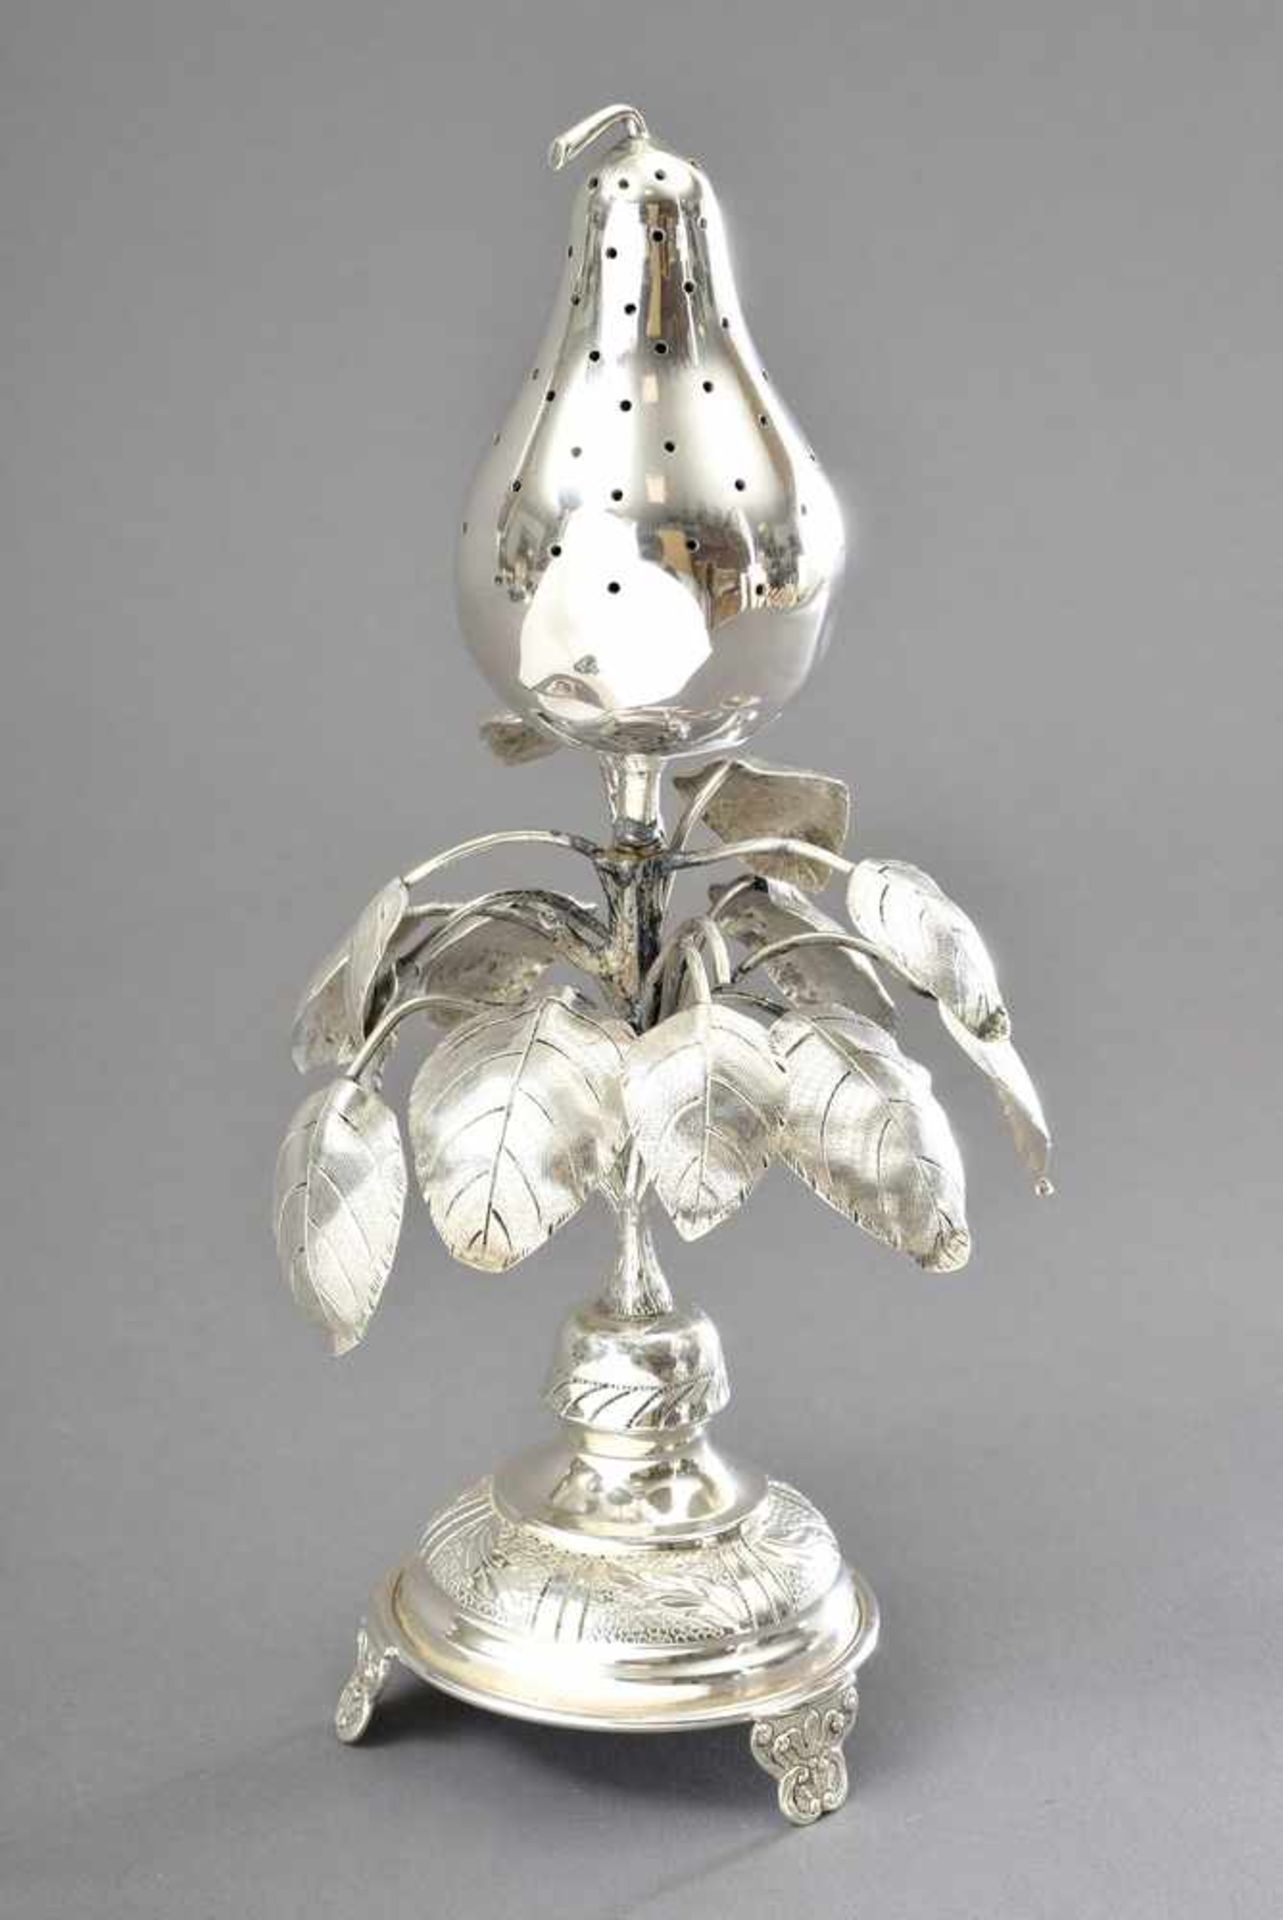 Paliteiro "Birne", Silber (ungepunzt), 253g, 2teilig, H. 24cm, Druckstellen, etwas defekt - Image 2 of 2